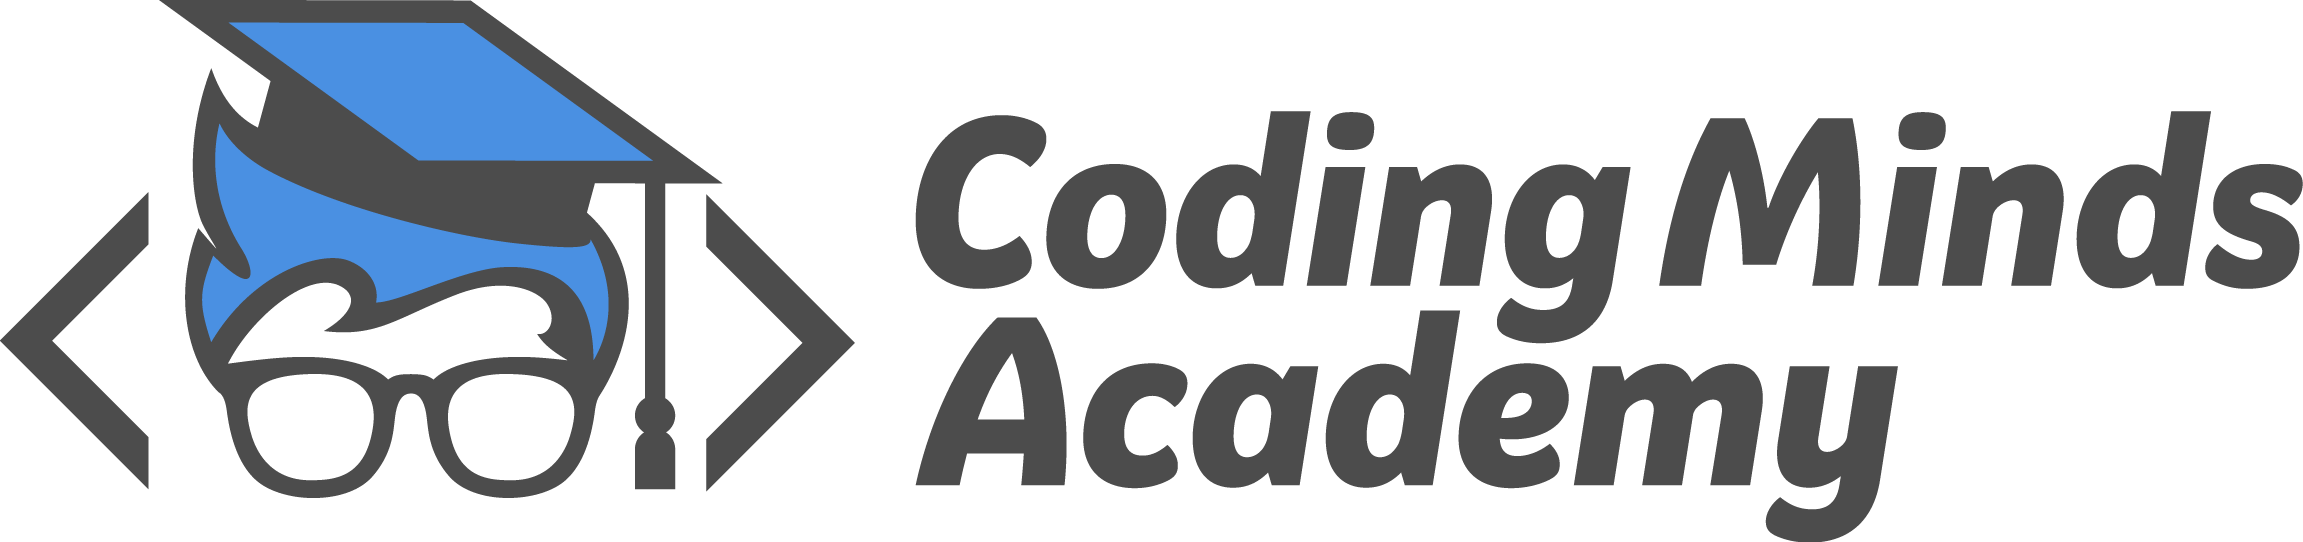 Codify. Программирование логотип. Код логотип. Кодинг лого. Эволюционное программирование логотип.